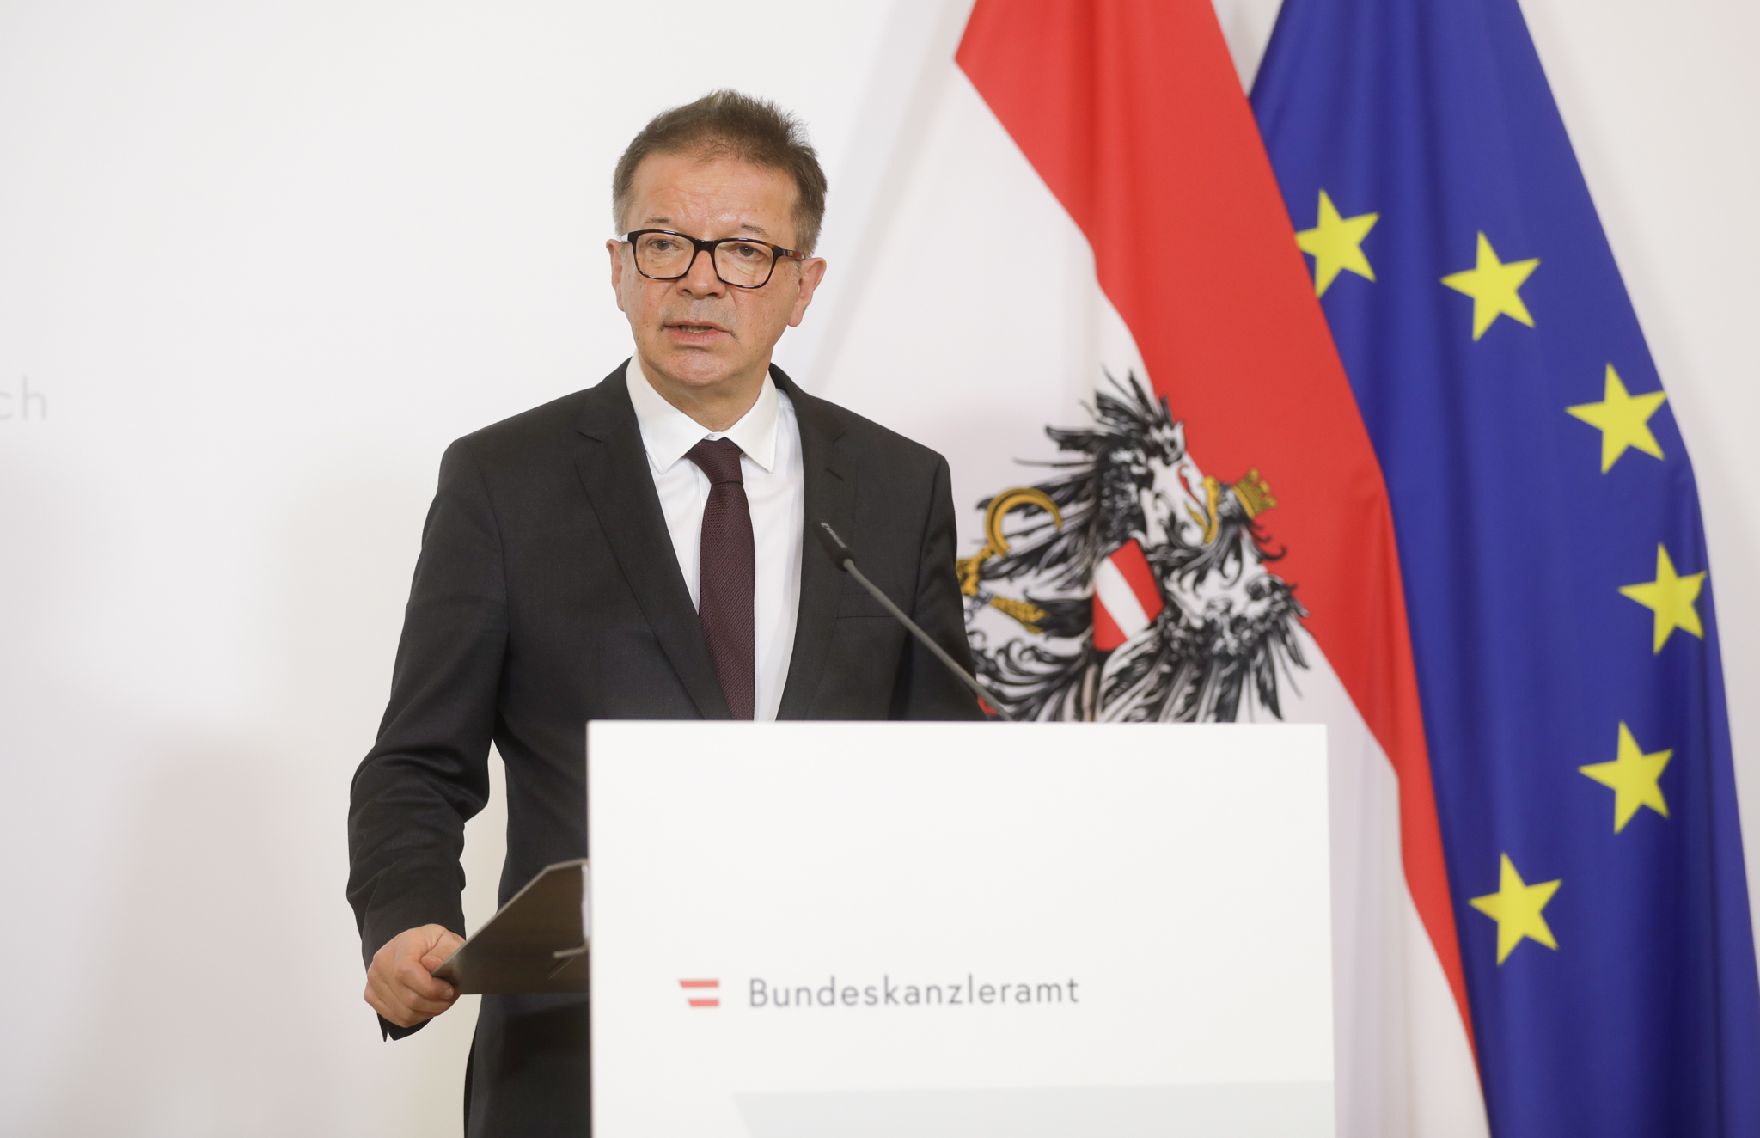 Am 19. März 2020 fand ein Pressestatement zu den Maßnahmen gegen die Krise im Bundeskanzleramt statt. Im Bild Gesundheitsminister Rudolf Anschober.